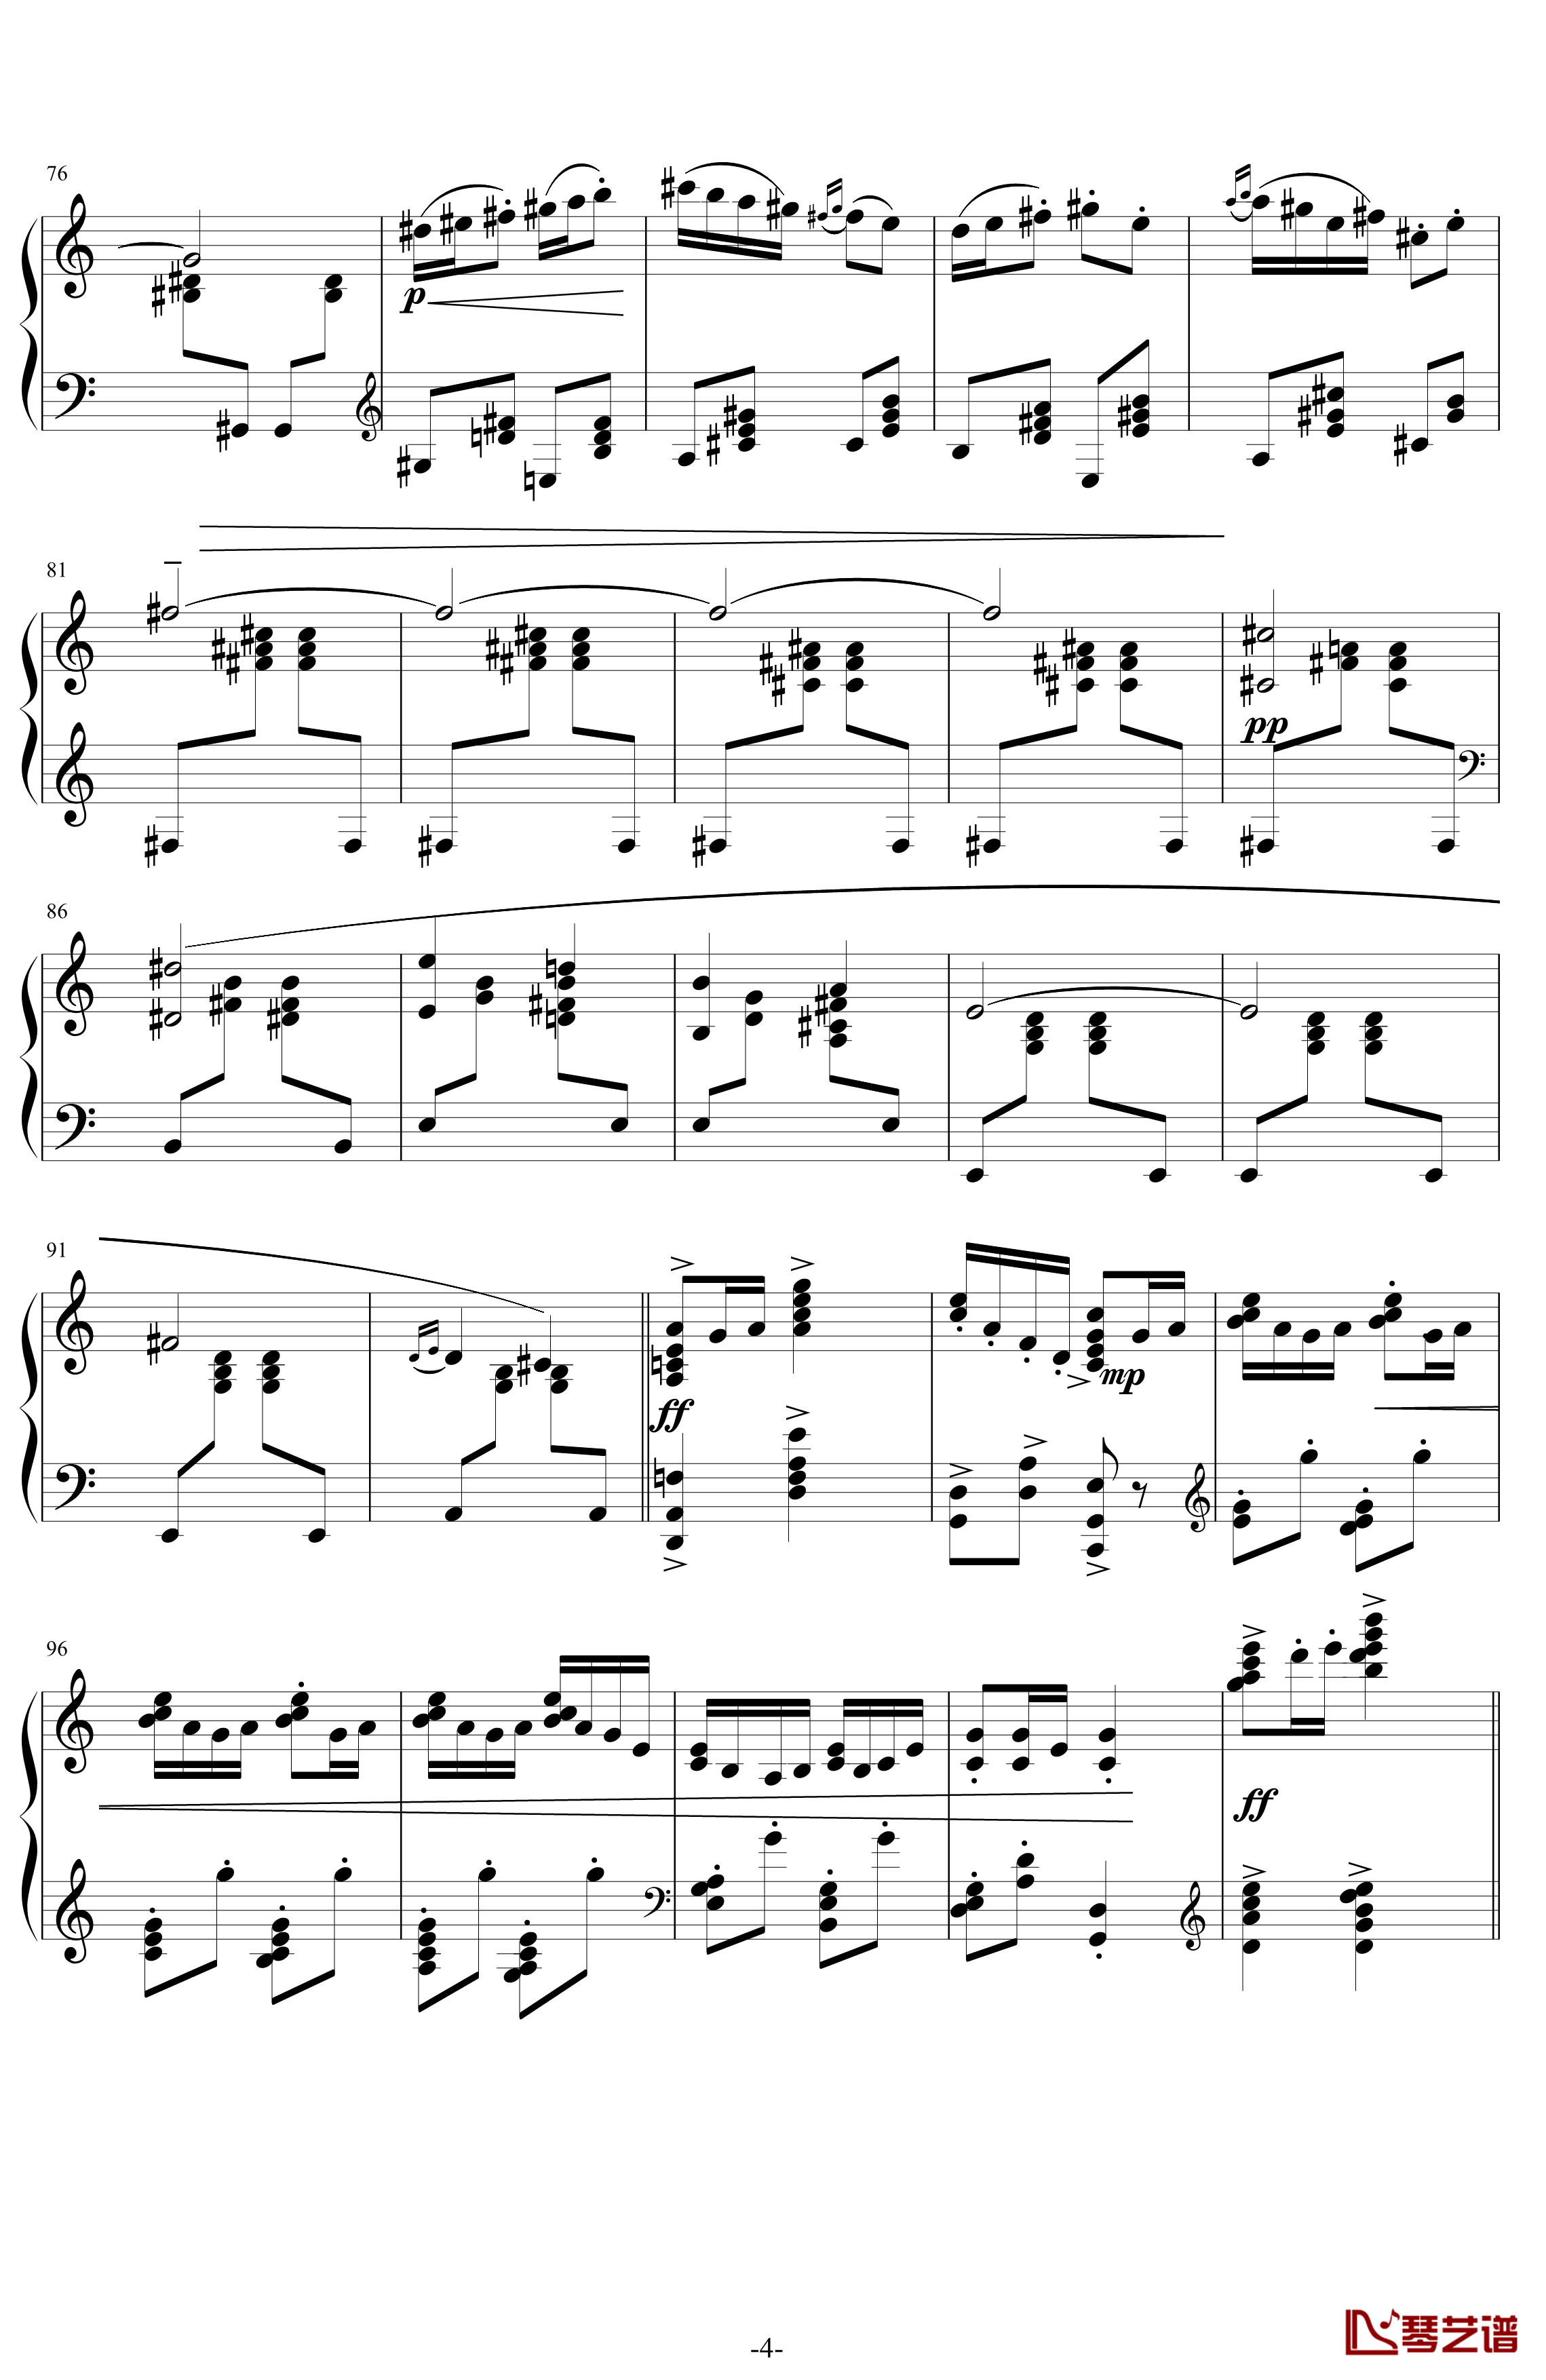 利戈顿舞曲钢琴谱-选自《库普兰之墓》-拉威尔-Ravel4